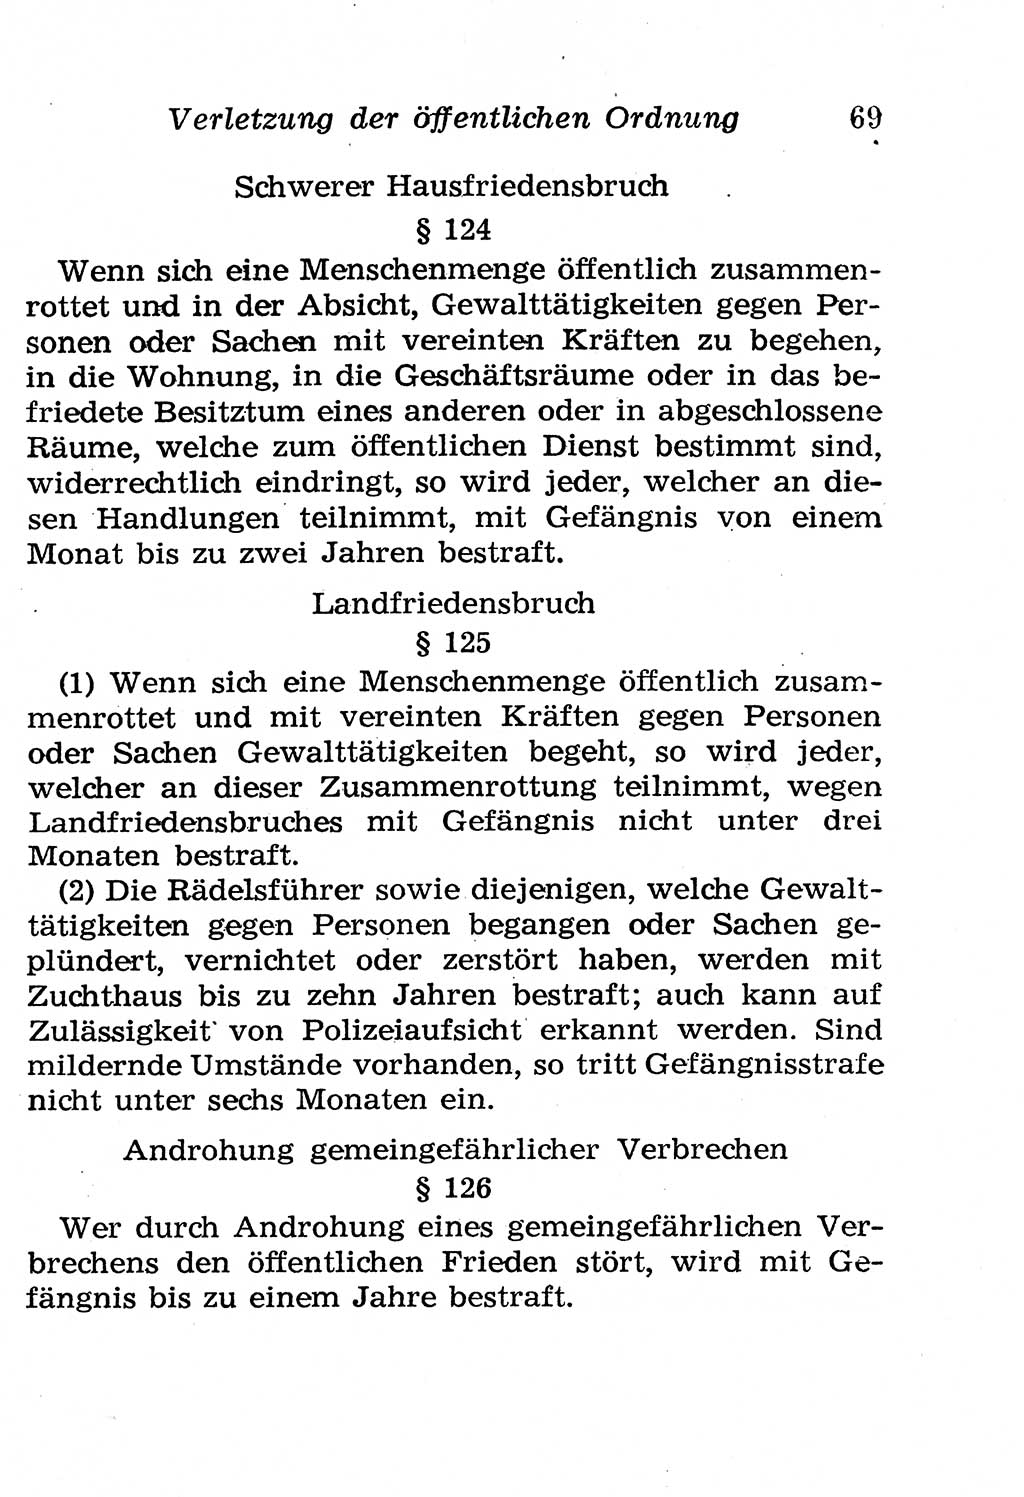 Strafgesetzbuch (StGB) und andere Strafgesetze [Deutsche Demokratische Republik (DDR)] 1958, Seite 69 (StGB Strafges. DDR 1958, S. 69)